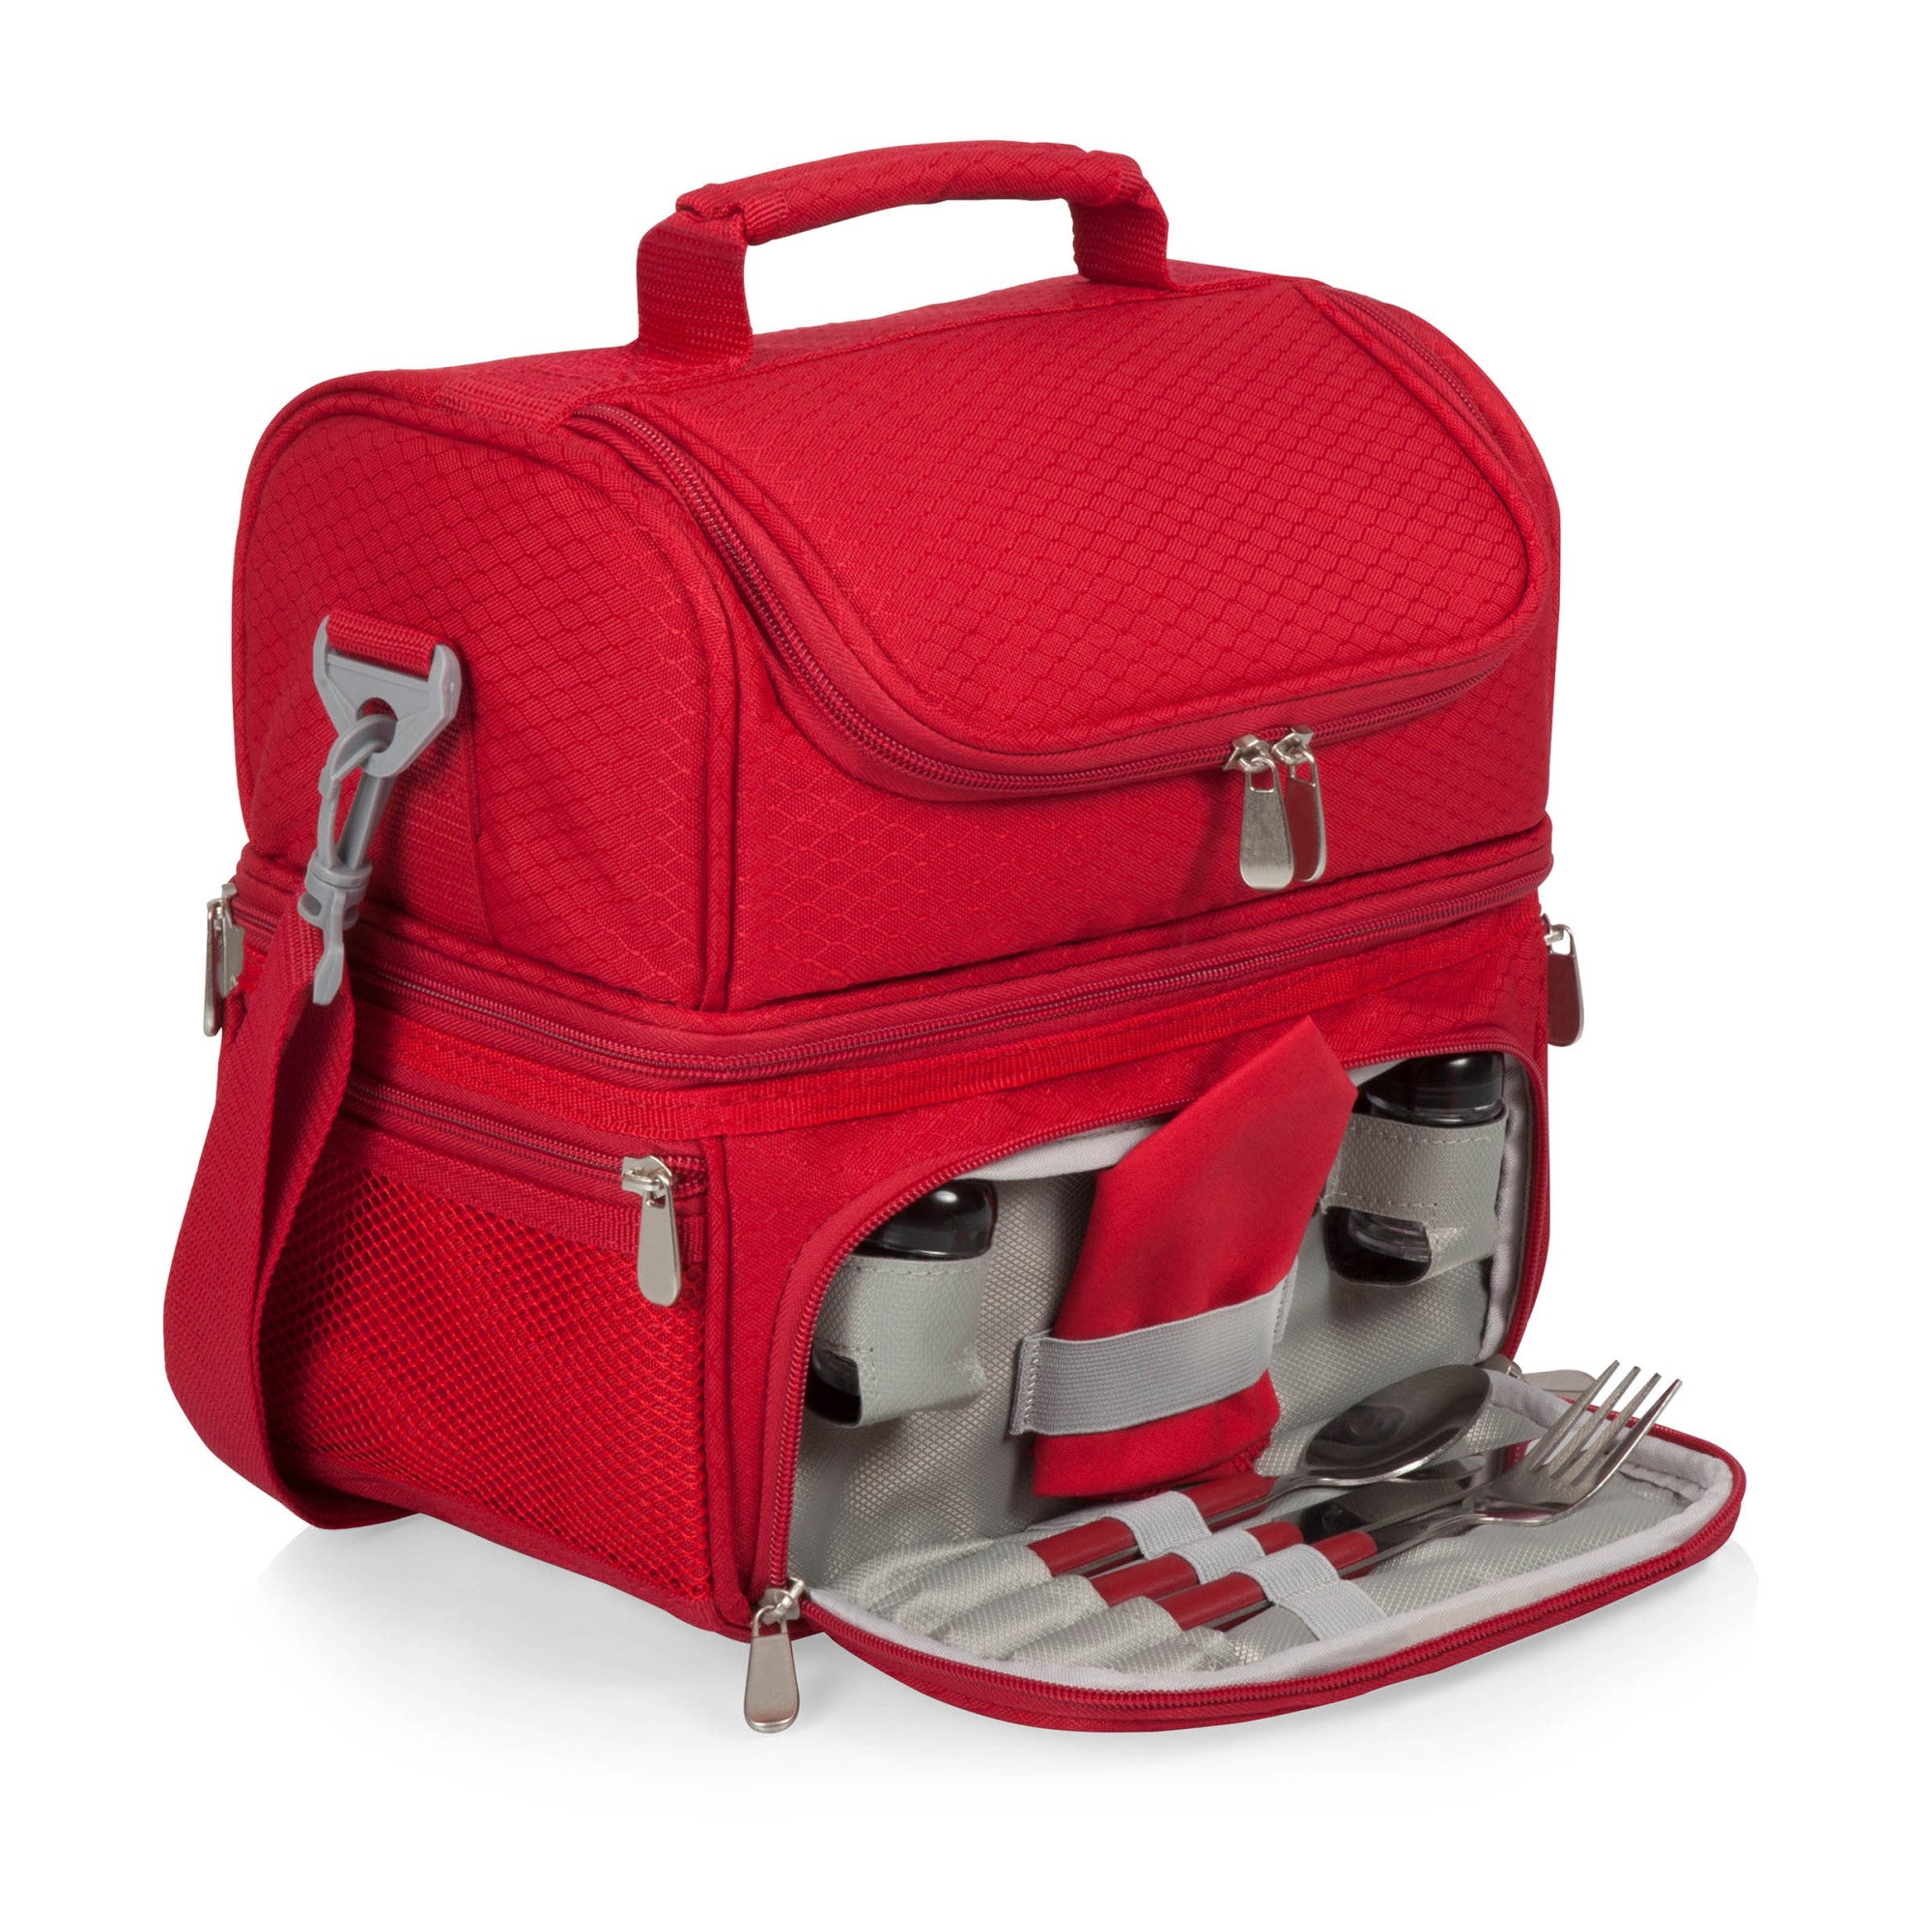 Cincinnati Reds - Pranzo Lunch Bag Cooler with Utensils